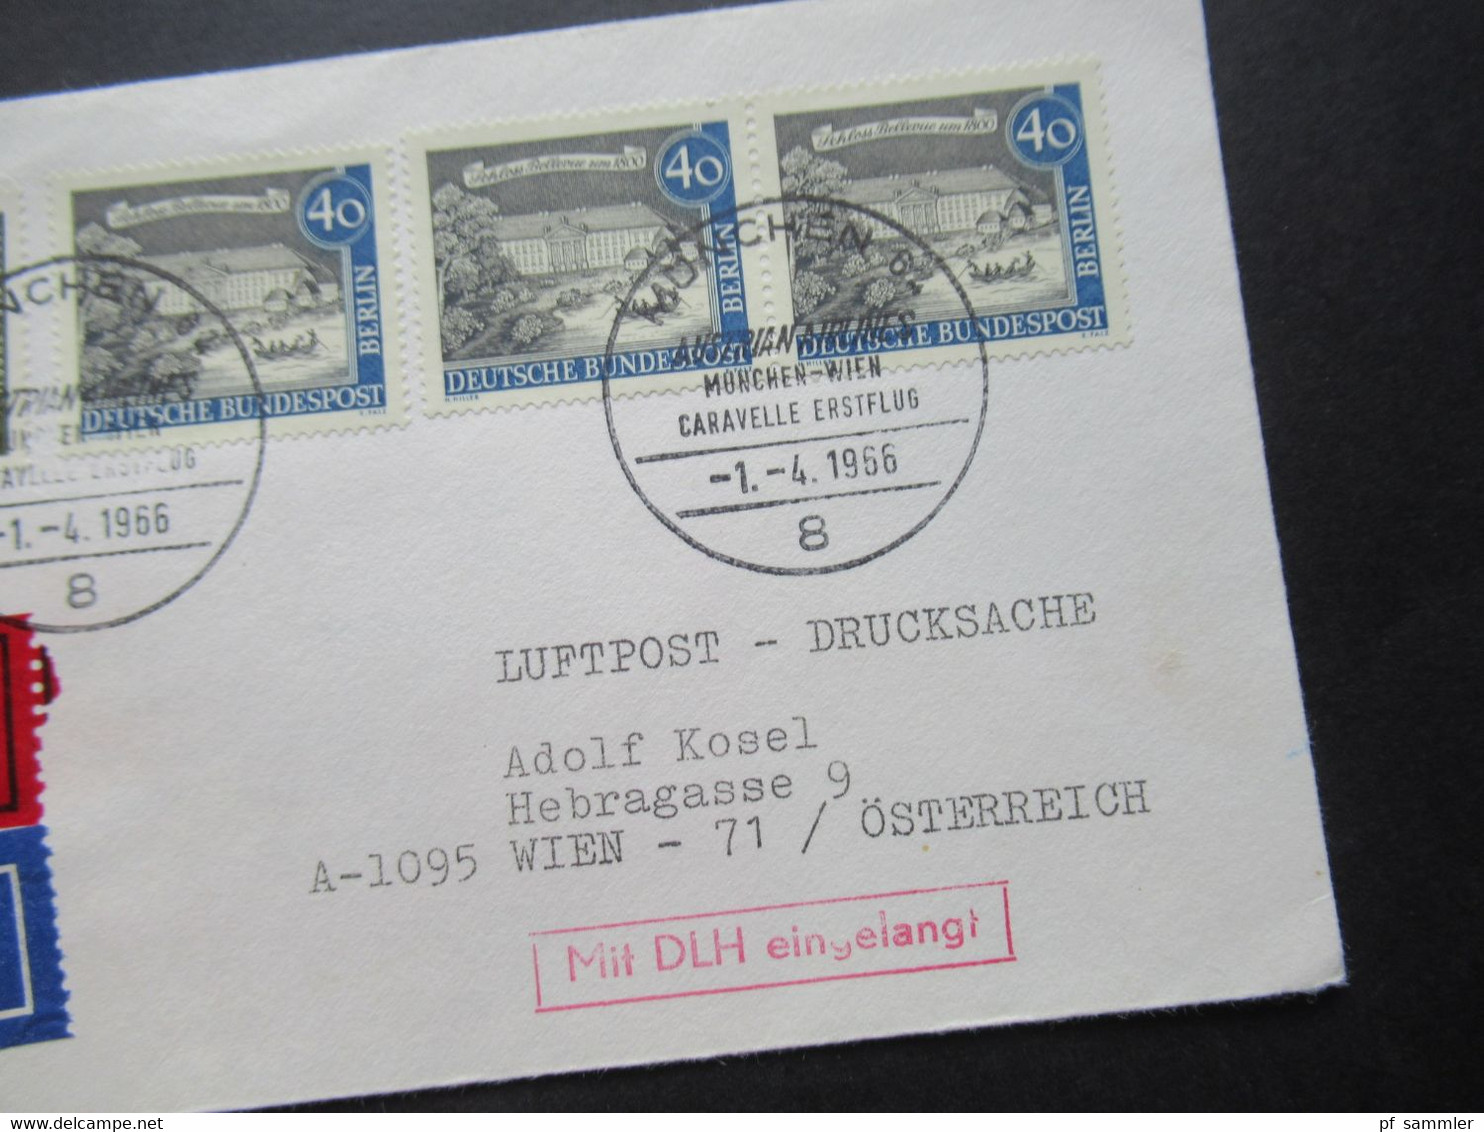 1966 Berlin (West) Alt Berlin Nr.220 MiF Mit Luftpost Eilzustellung Expres München - Wien / Stempel Mit DLH Eingelangt - Covers & Documents